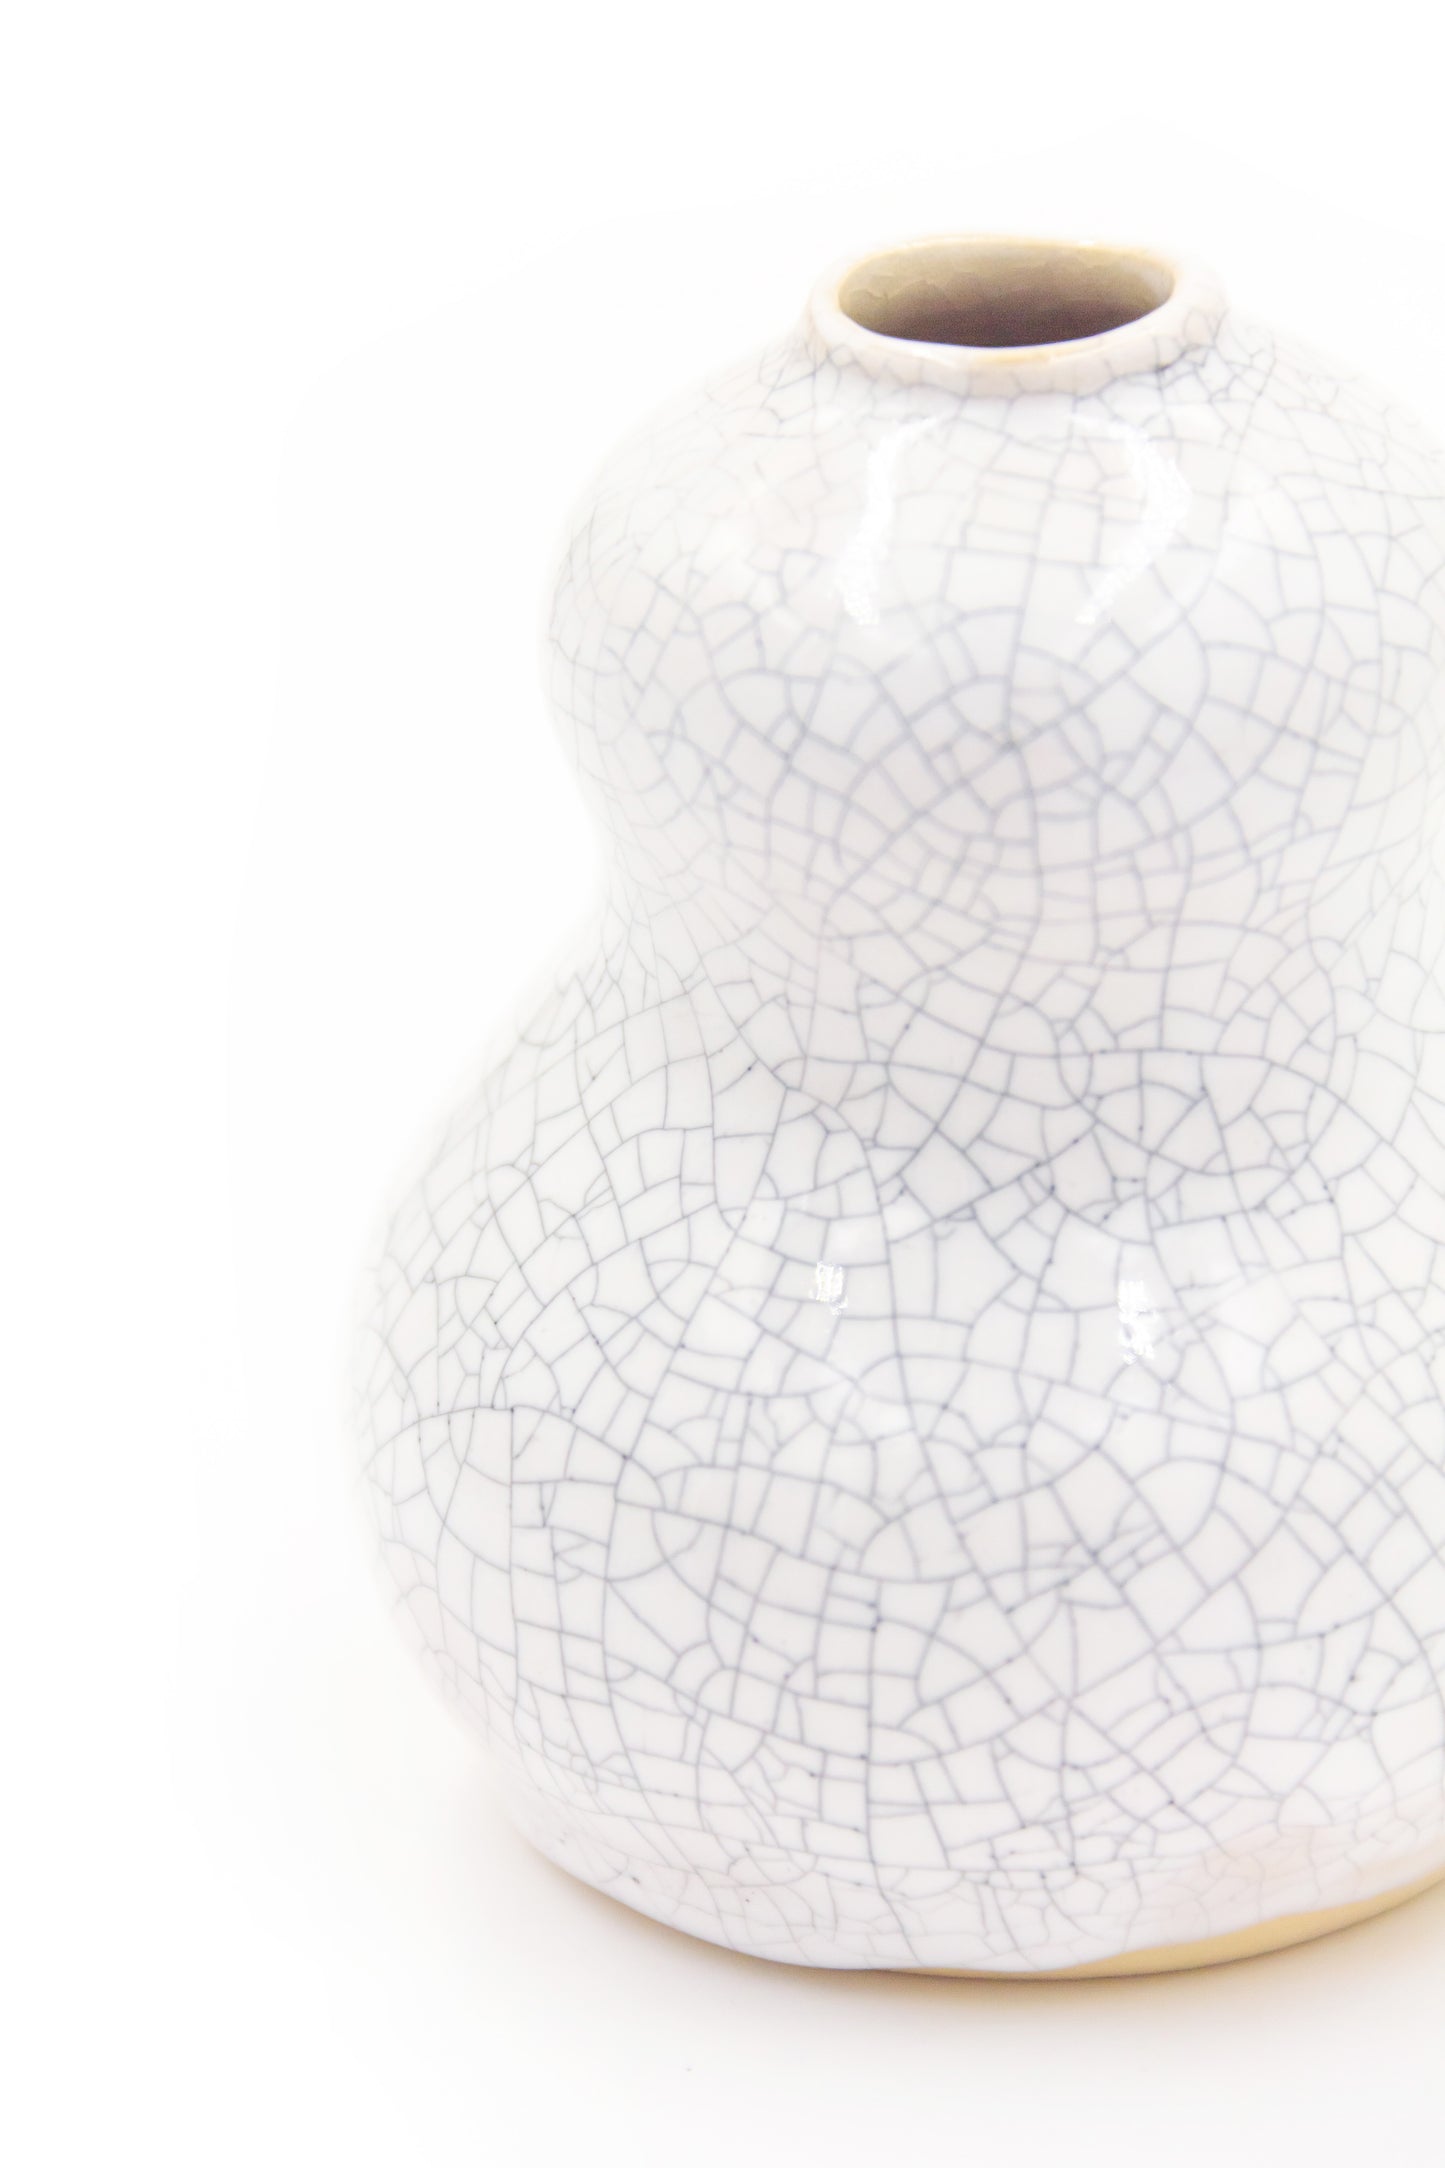 Wazonik ceramiczny w kolorze białym oraz efektem krakle